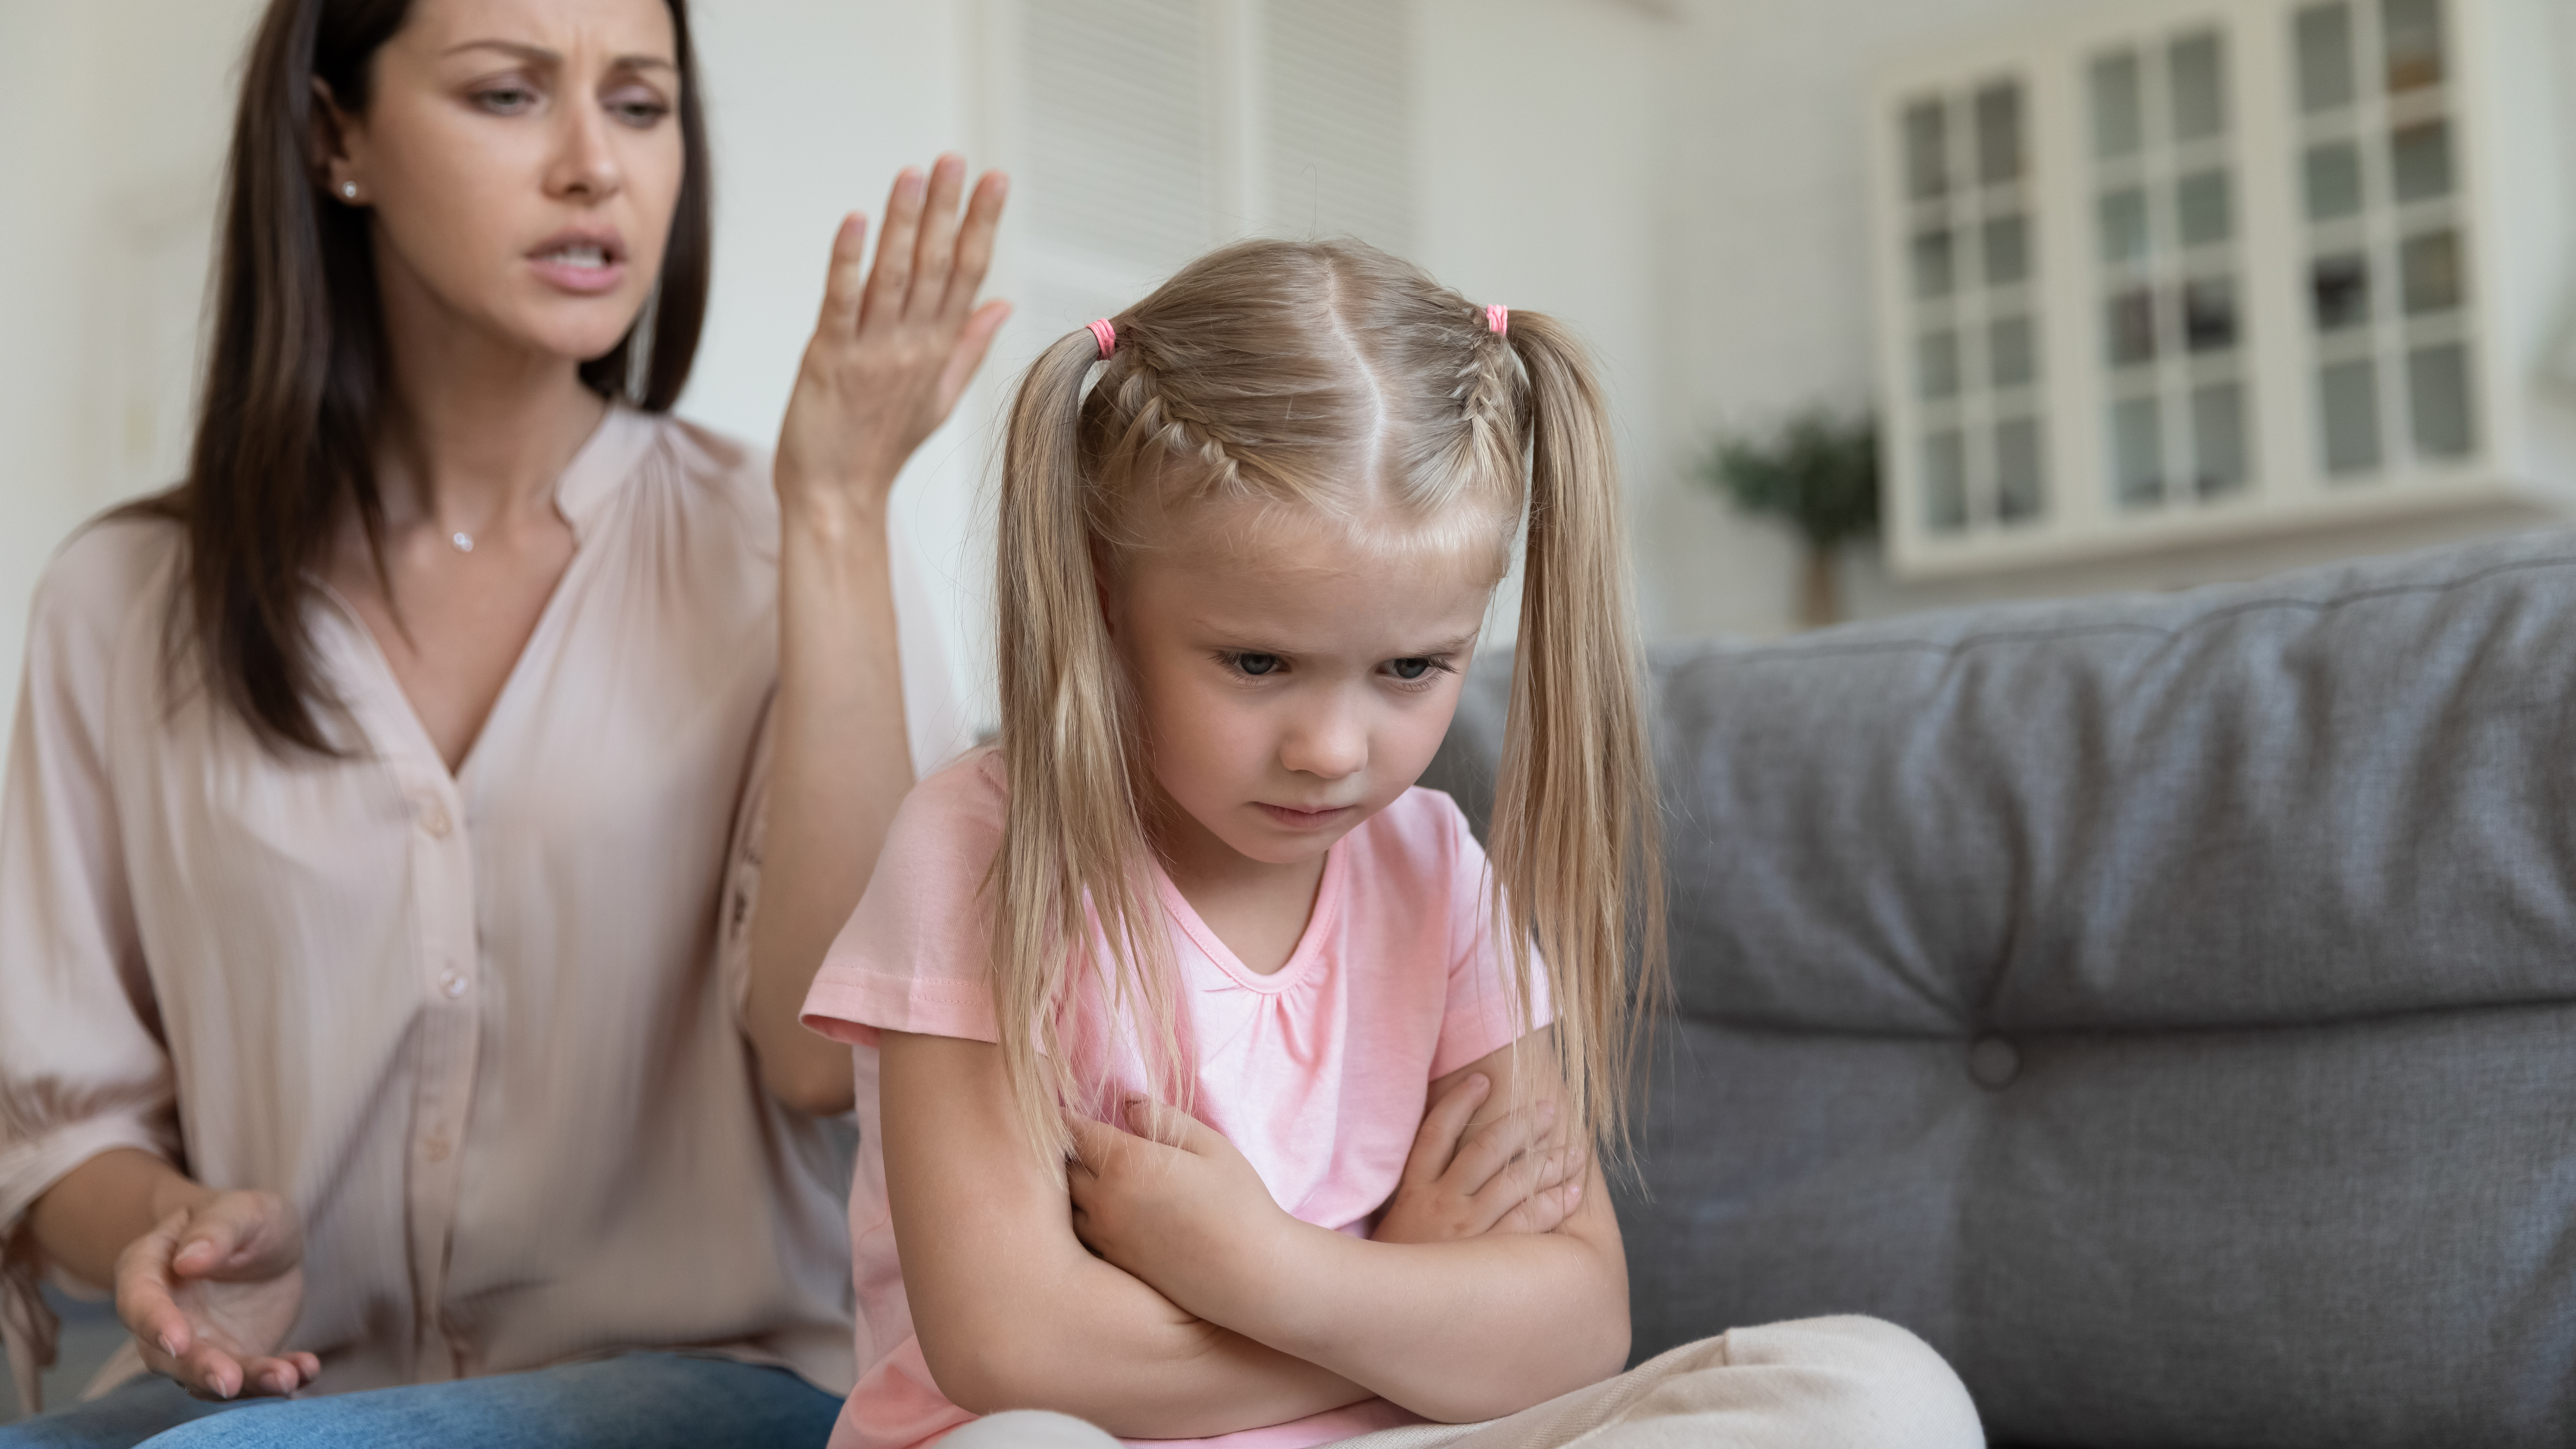 A mother scolding a little girl | Source: Shutterstock